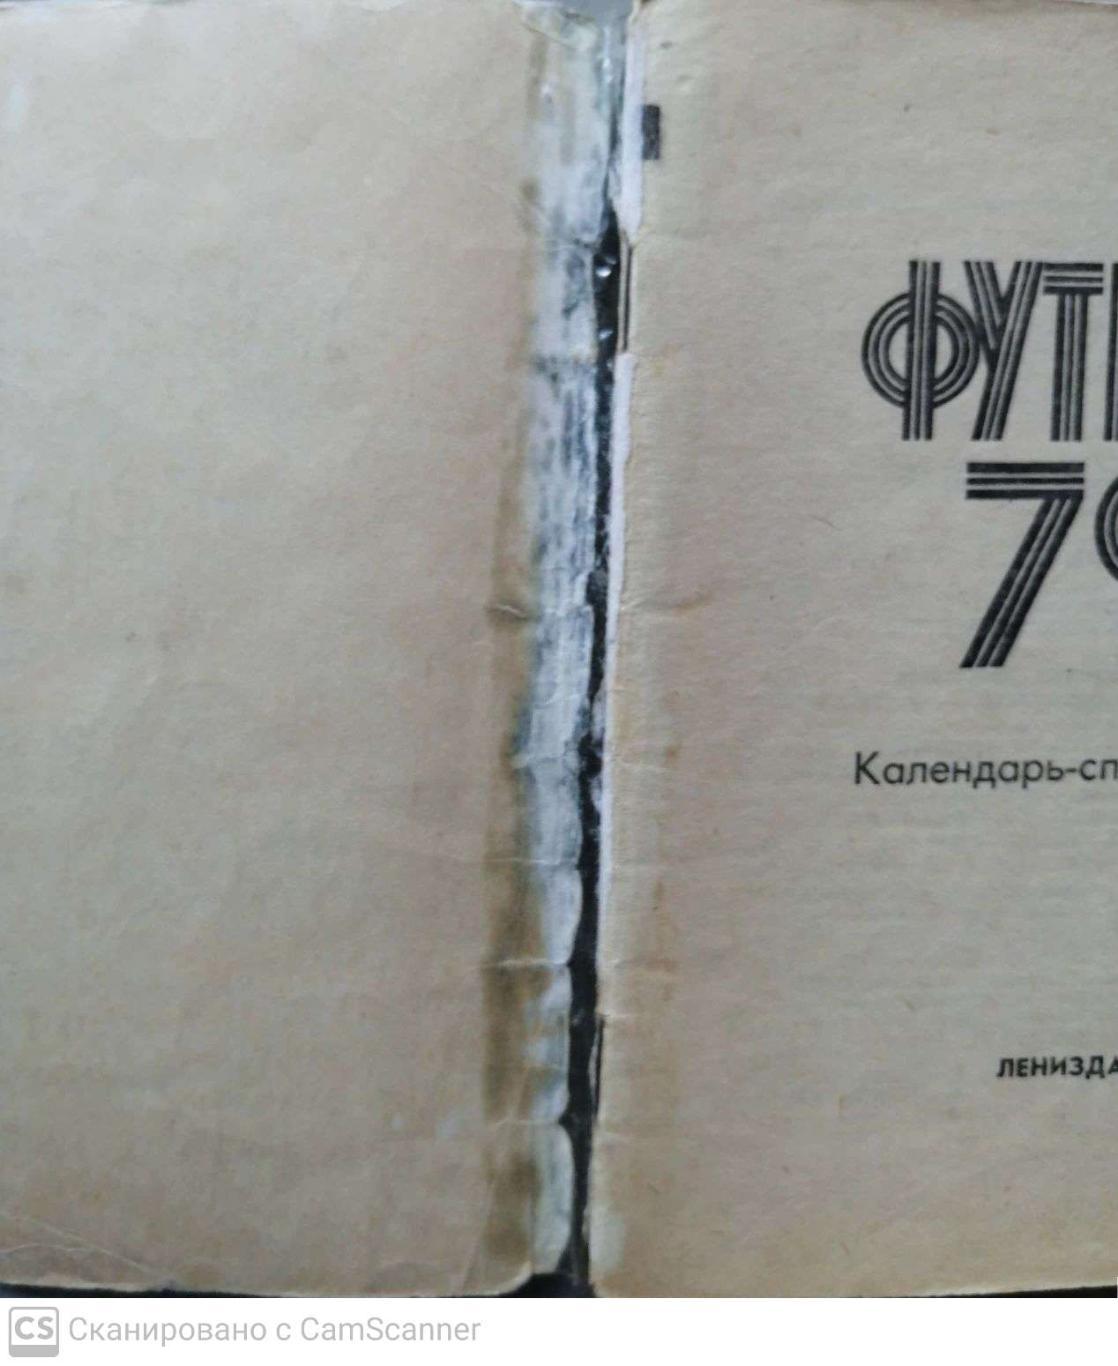 Календарь-справочник. Ленинград 1979 (Лениздат) 1